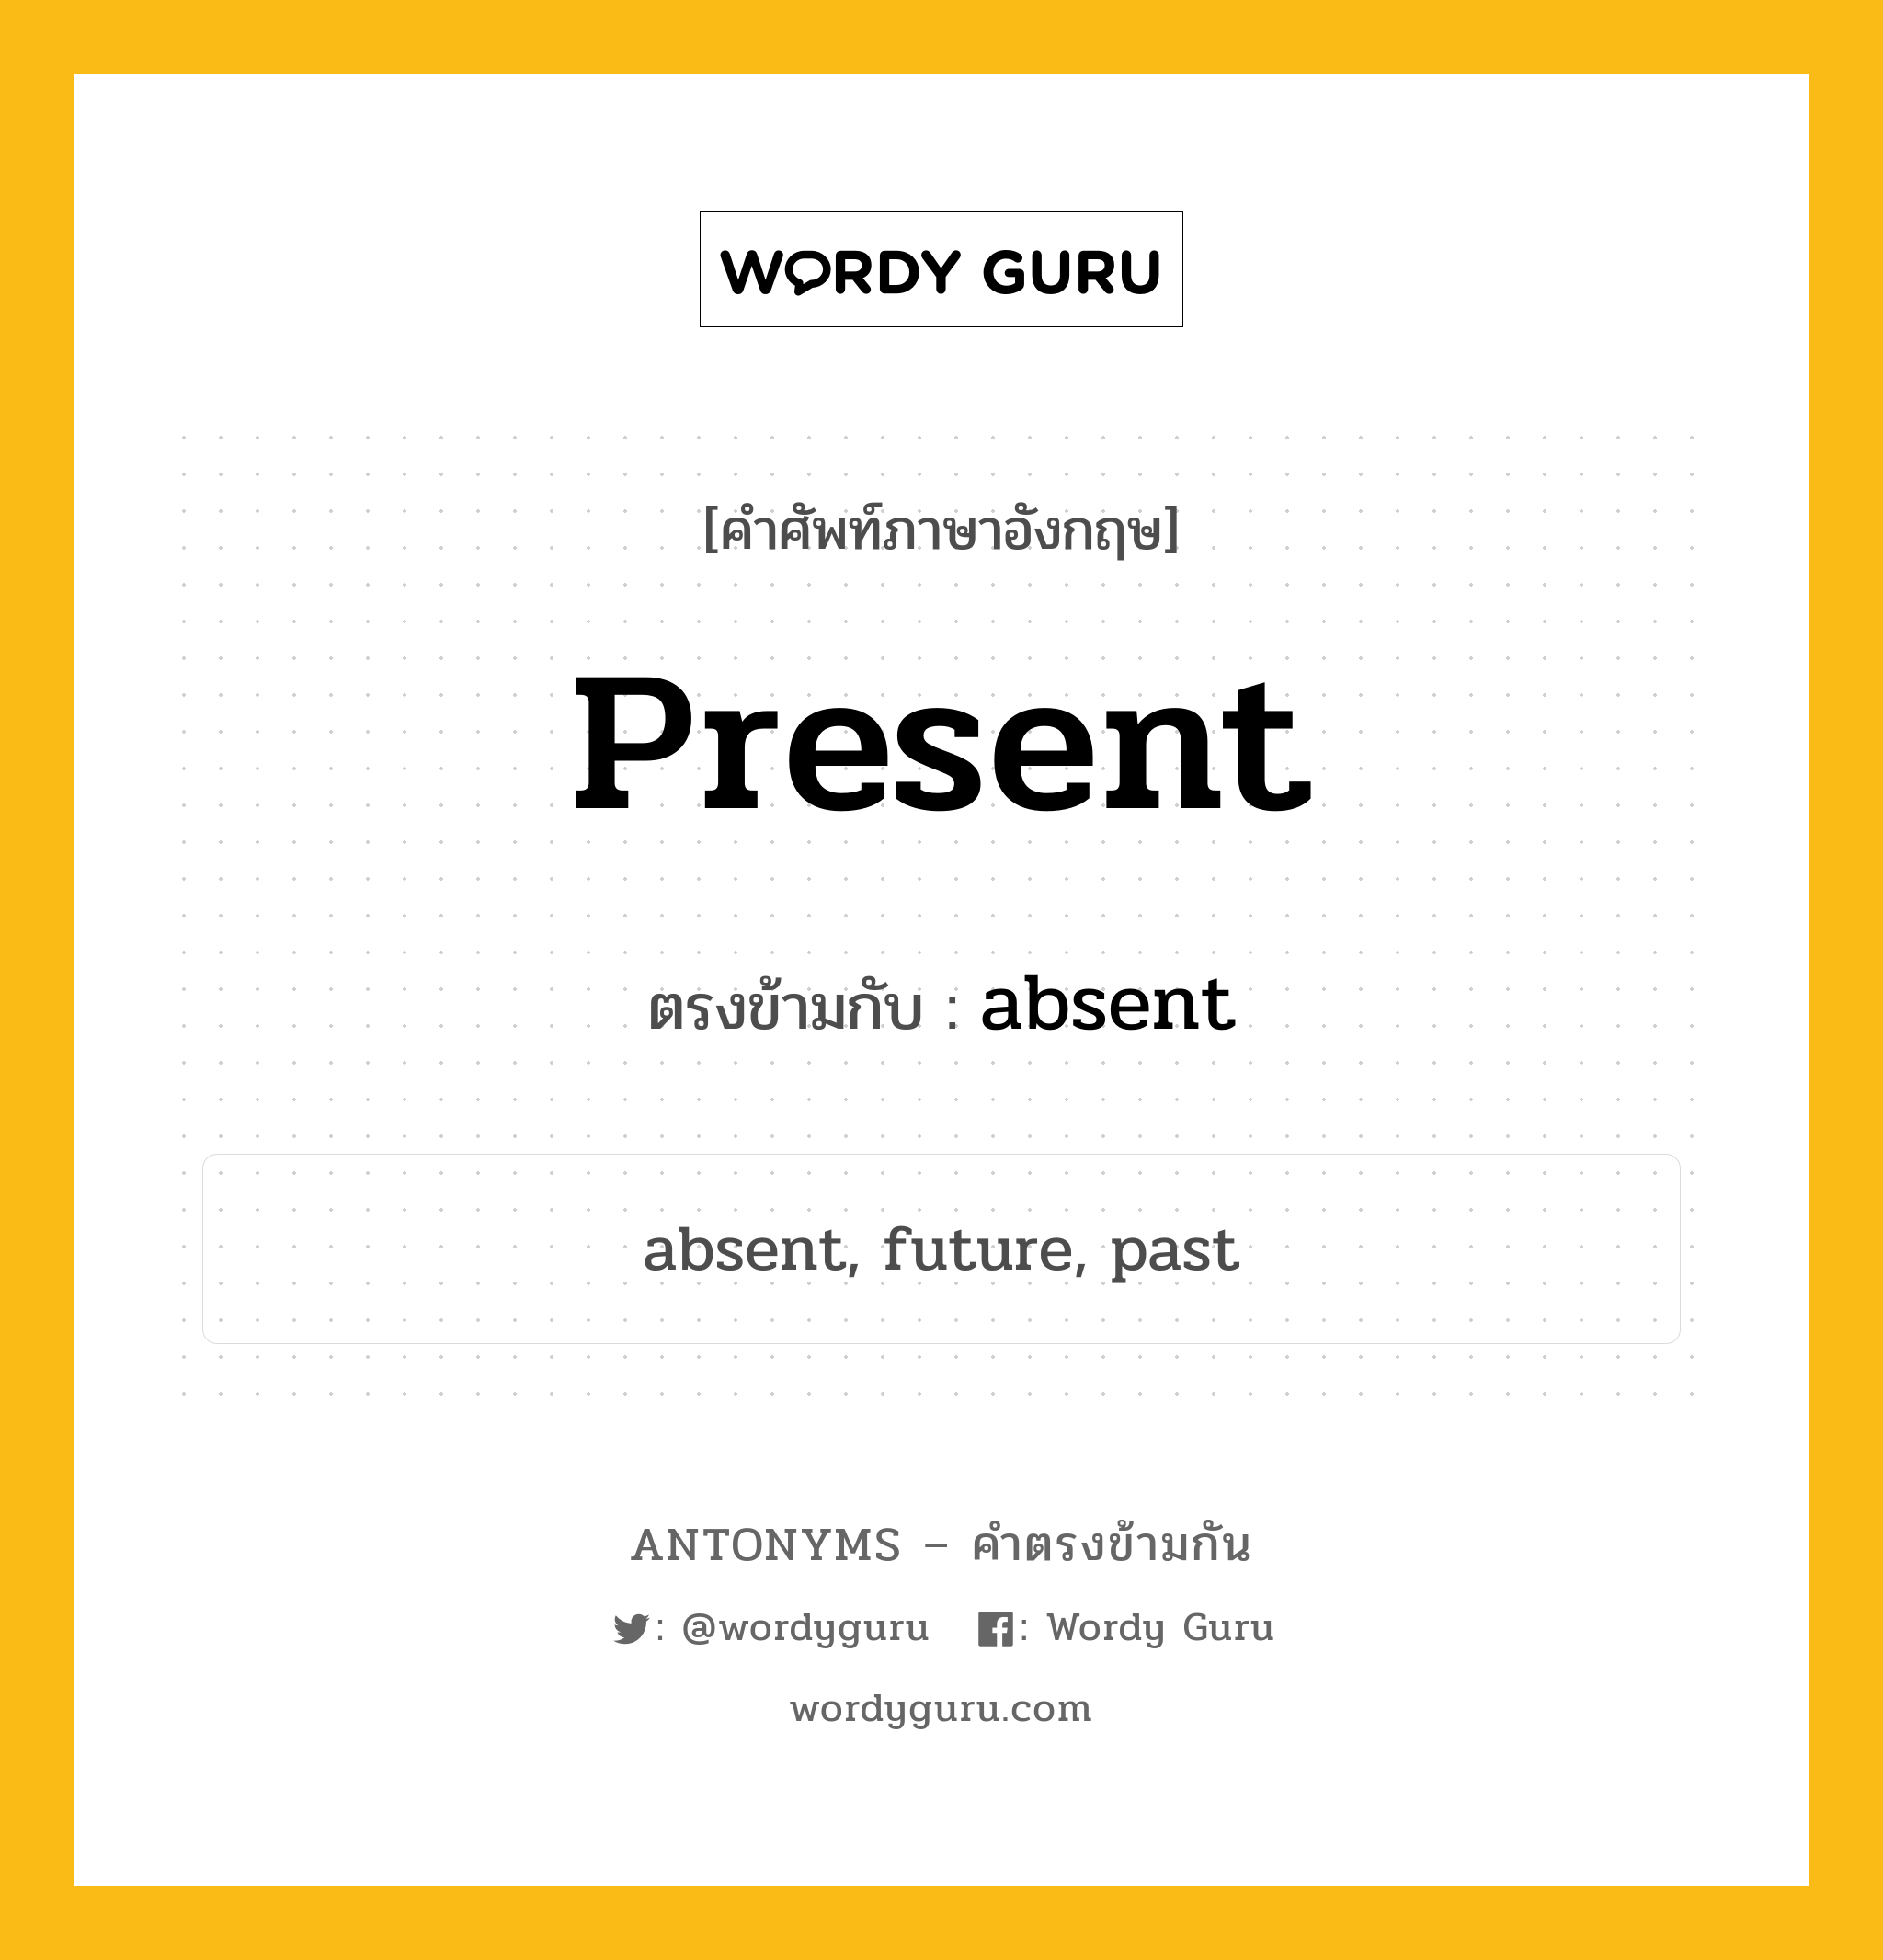 present เป็นคำตรงข้ามกับคำไหนบ้าง?, คำศัพท์ภาษาอังกฤษ present ตรงข้ามกับ absent หมวด absent